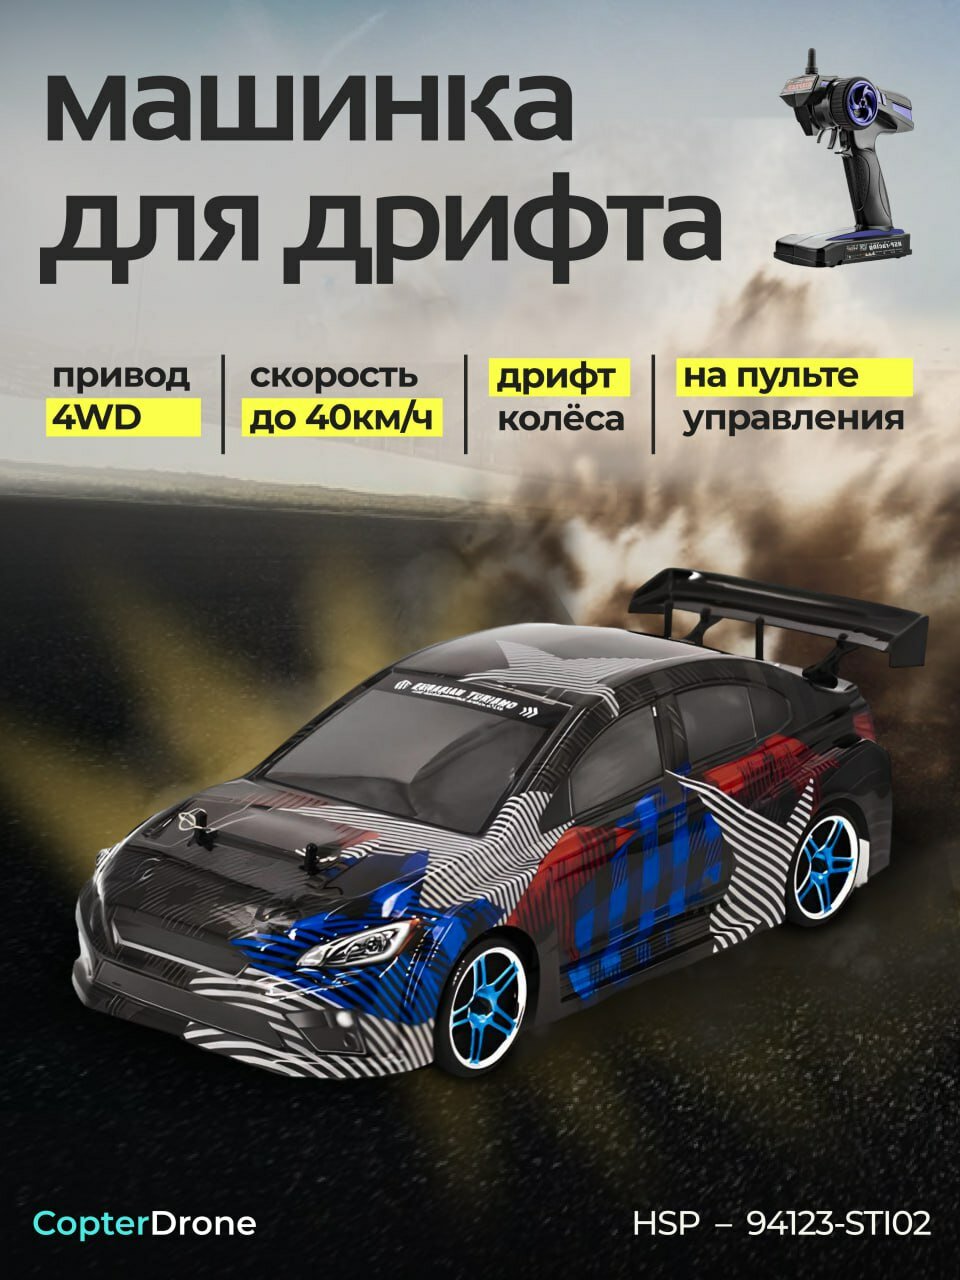 Радиоуправляемый автомобиль для дрифта HSP Flying Fish 1 масштаб 1:10 4WD - 94123-STI02